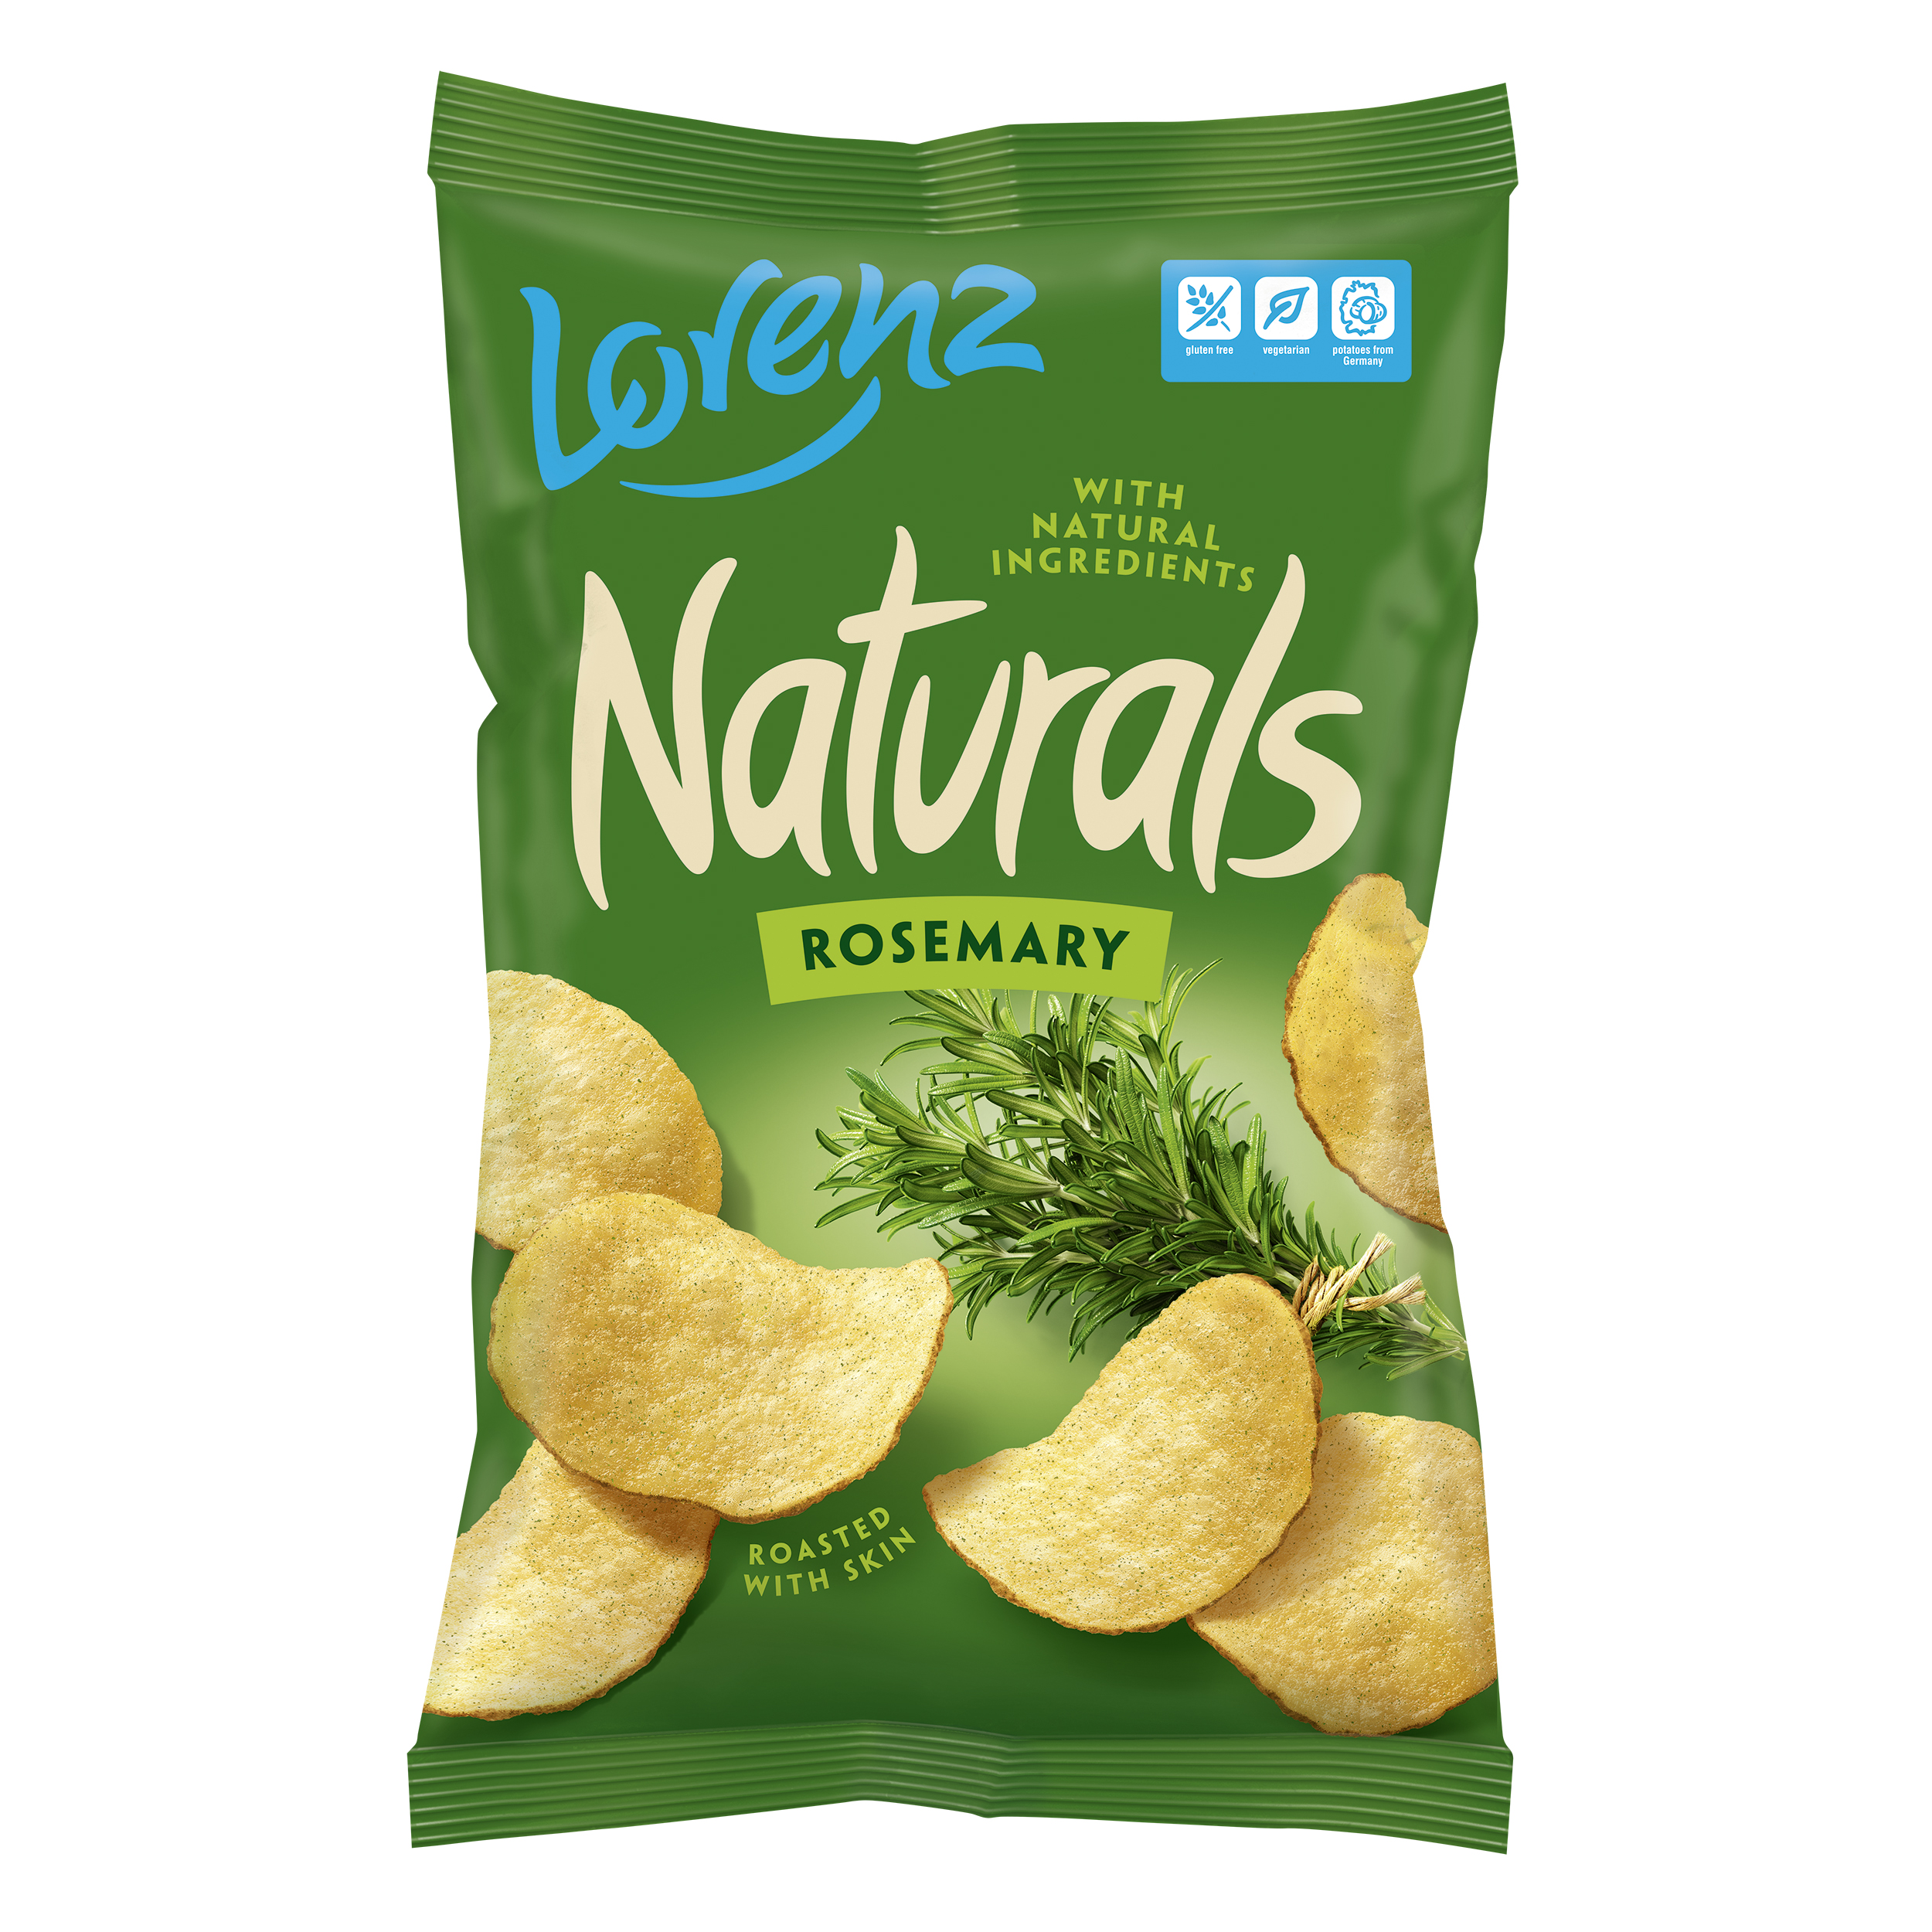 Lorenz Naturals potato chips rosemary